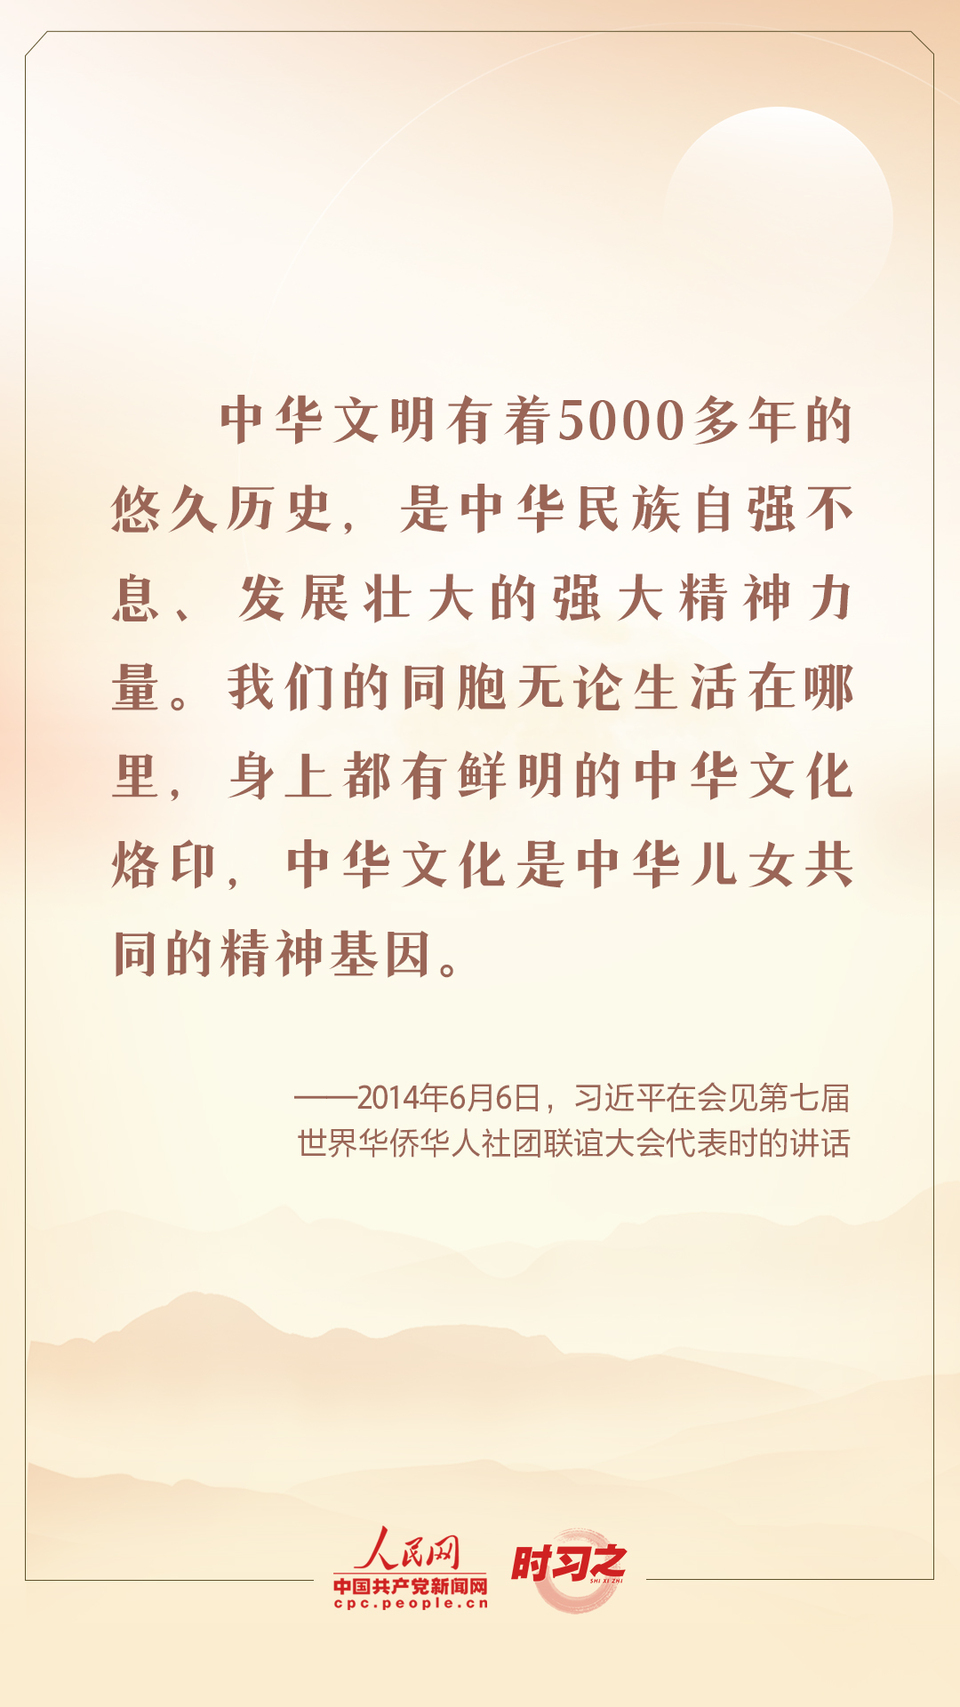 时习之 迎中秋 话传统 跟总书记一起坚定中华文化自信-ManBetX注册登录·(中国)